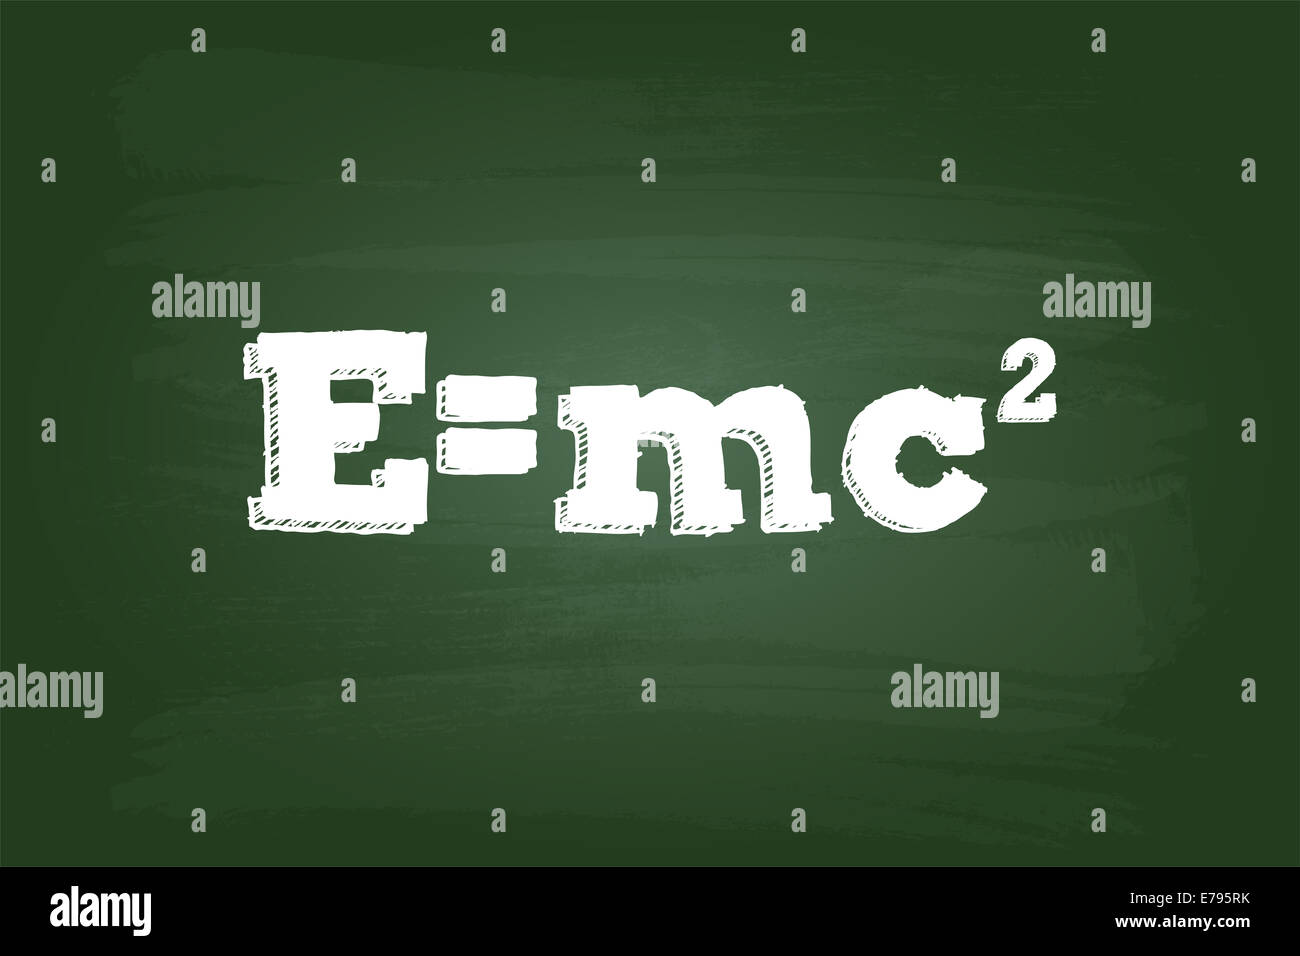 Einsteins Relativitätstheorie Formel Auf Tafel Stockfotografie Alamy 0649